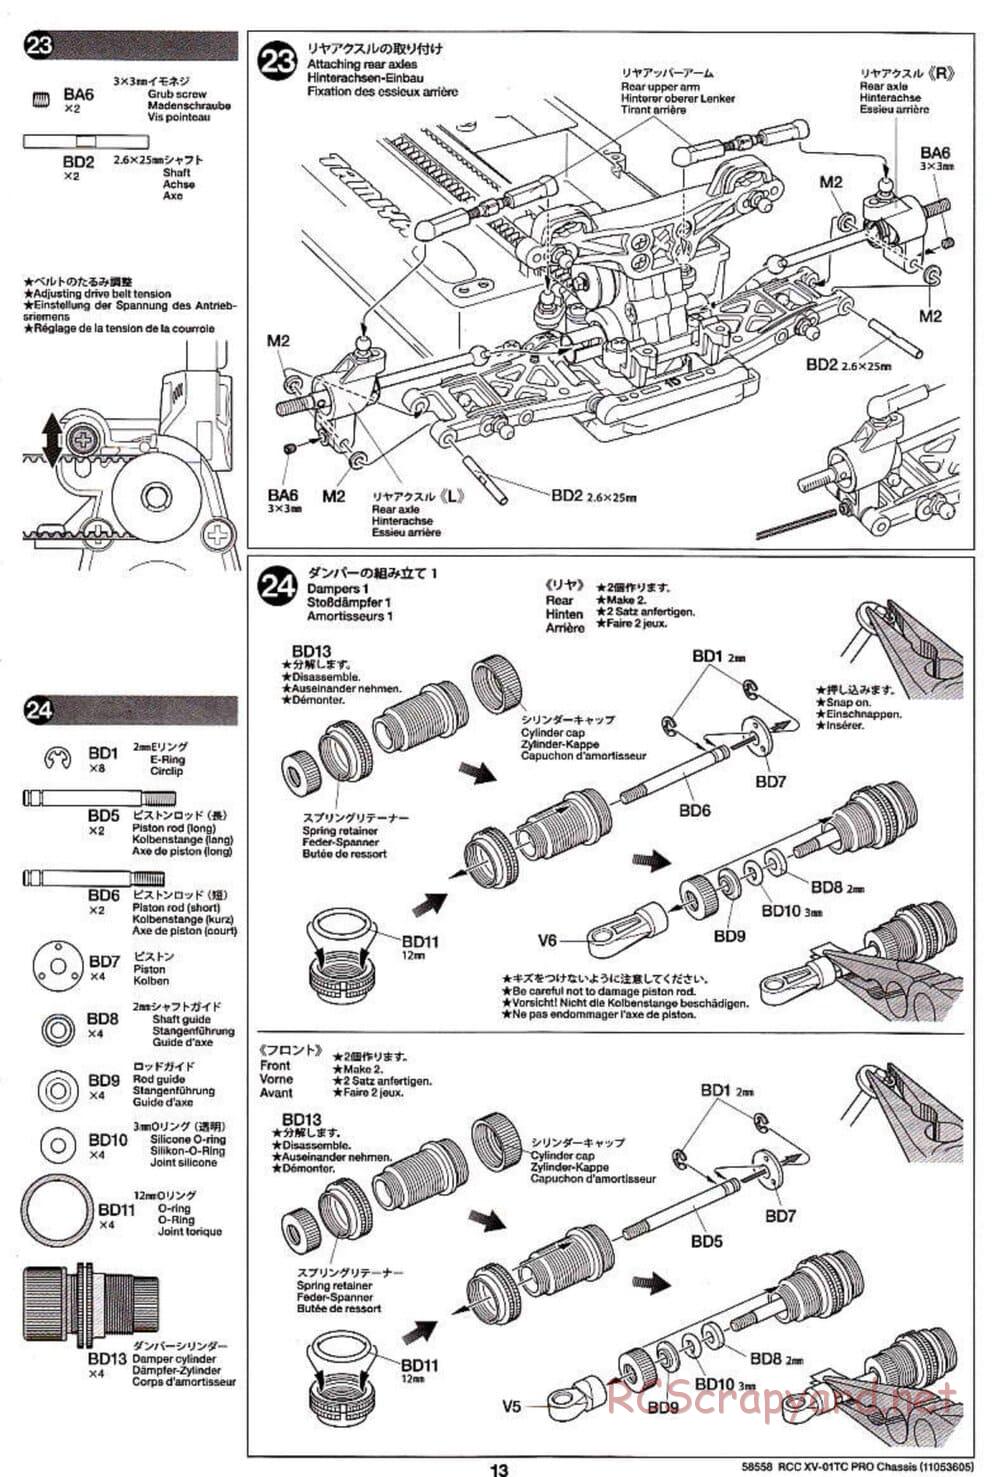 Tamiya - XV-01TC Chassis - Manual - Page 13